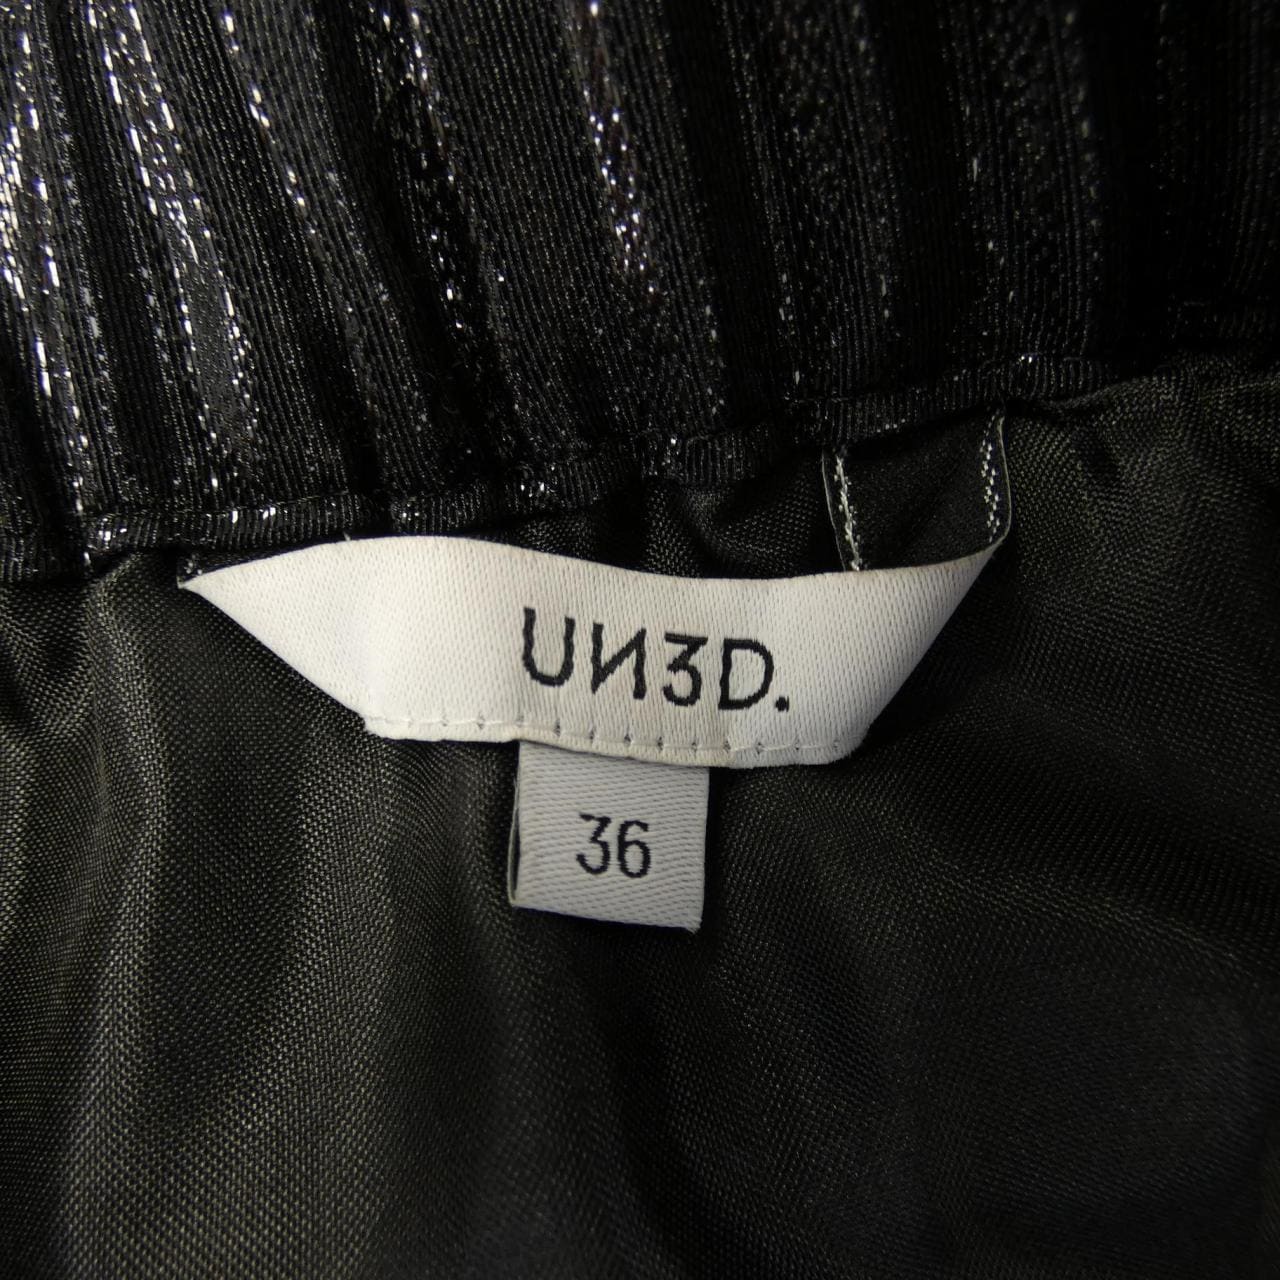 吊帶UN3D裙